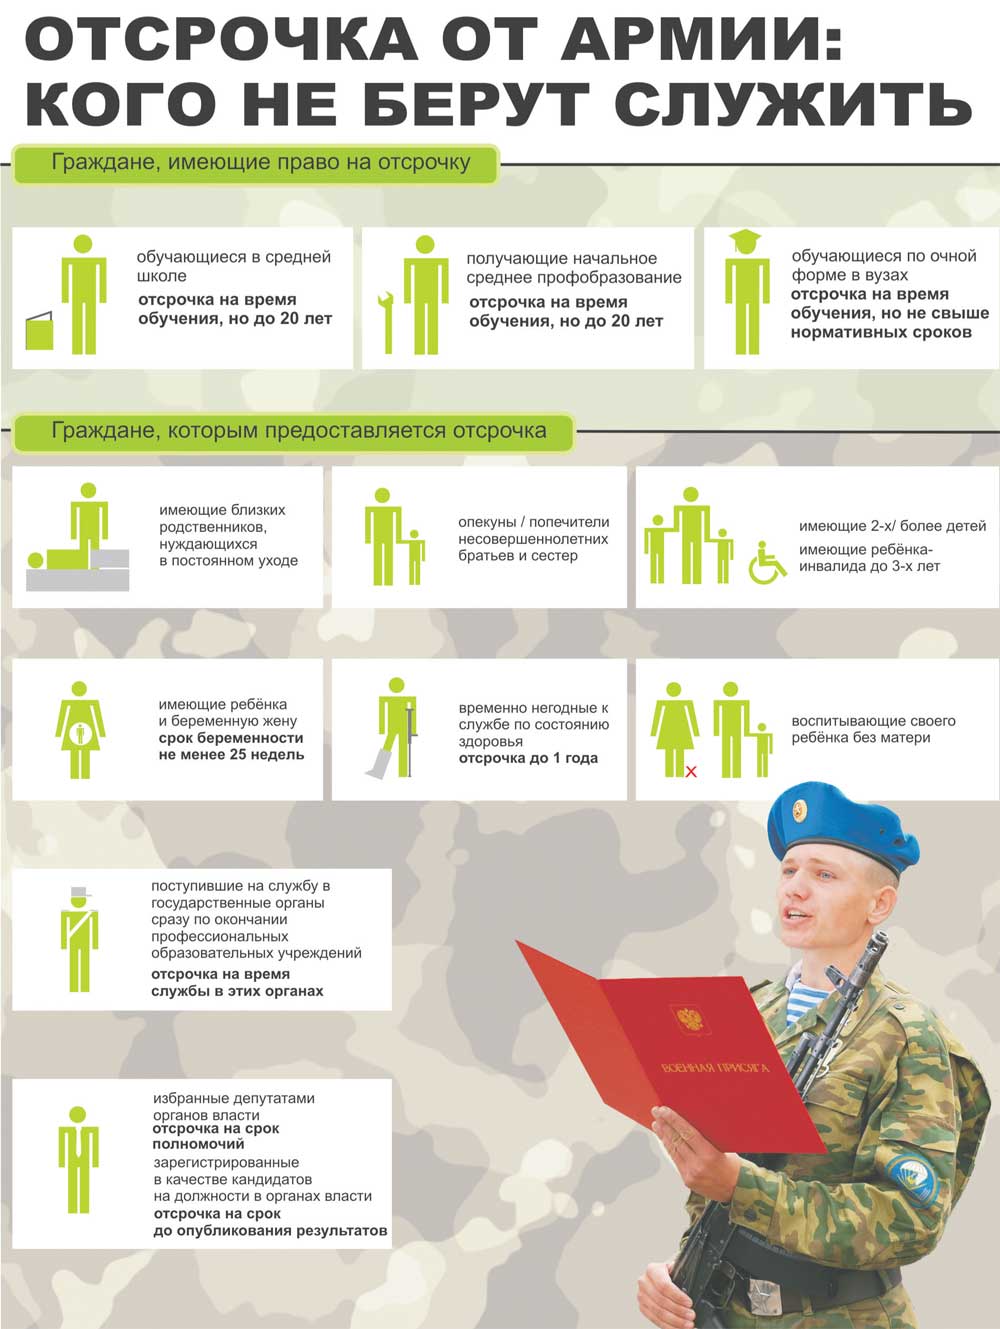 Права и обязанности военнослужащих в распоряжении